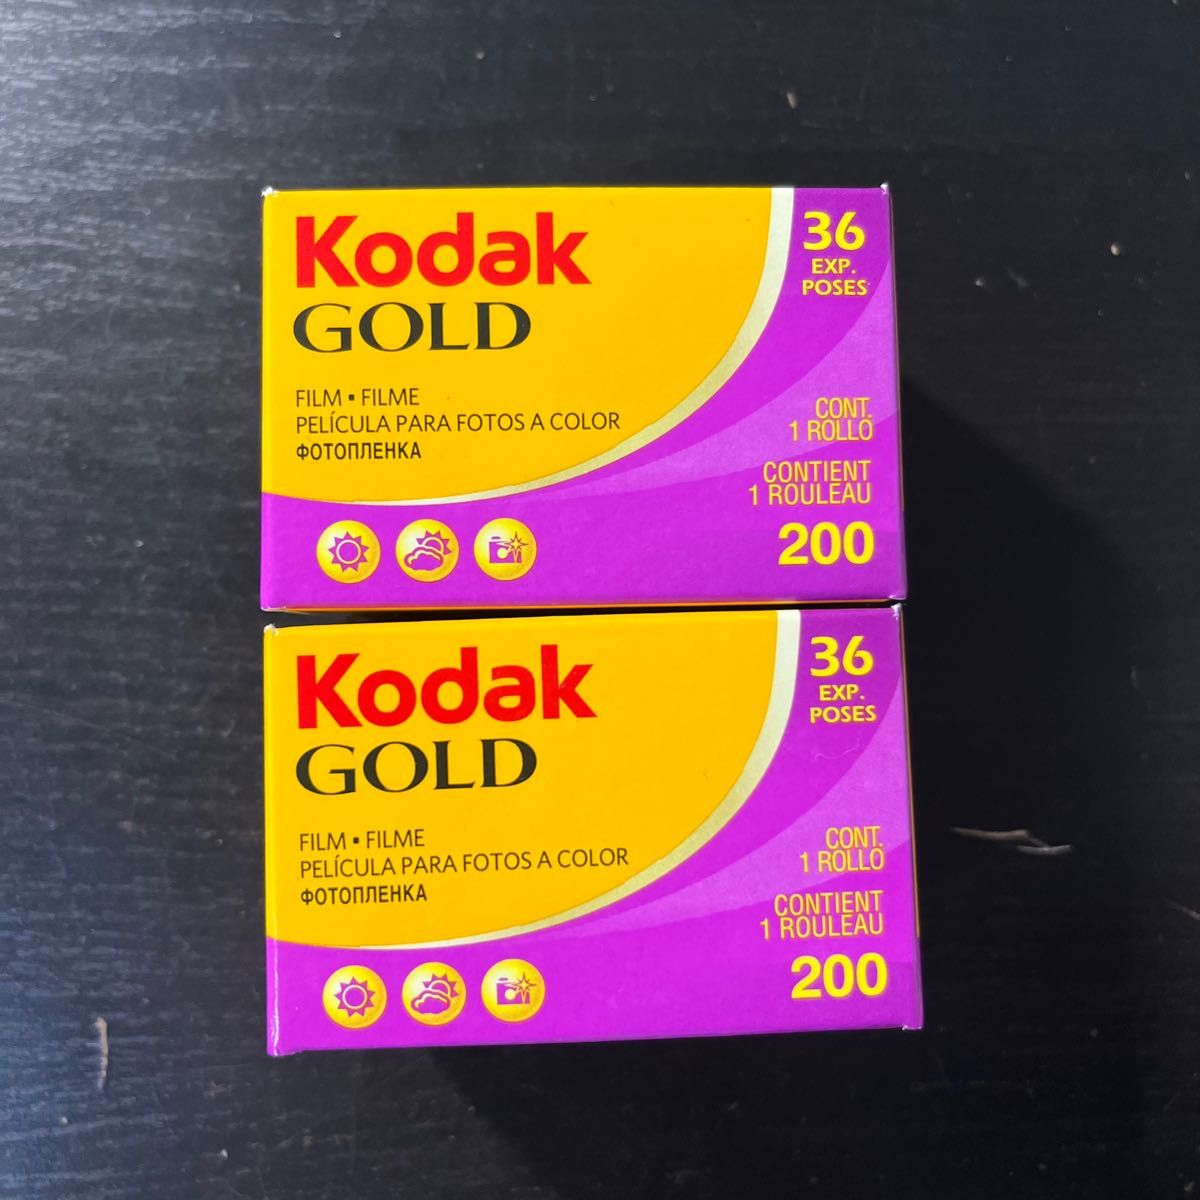 Kodak カラーネガフィルム GOLD 200-36 期限切れ 10本セット-